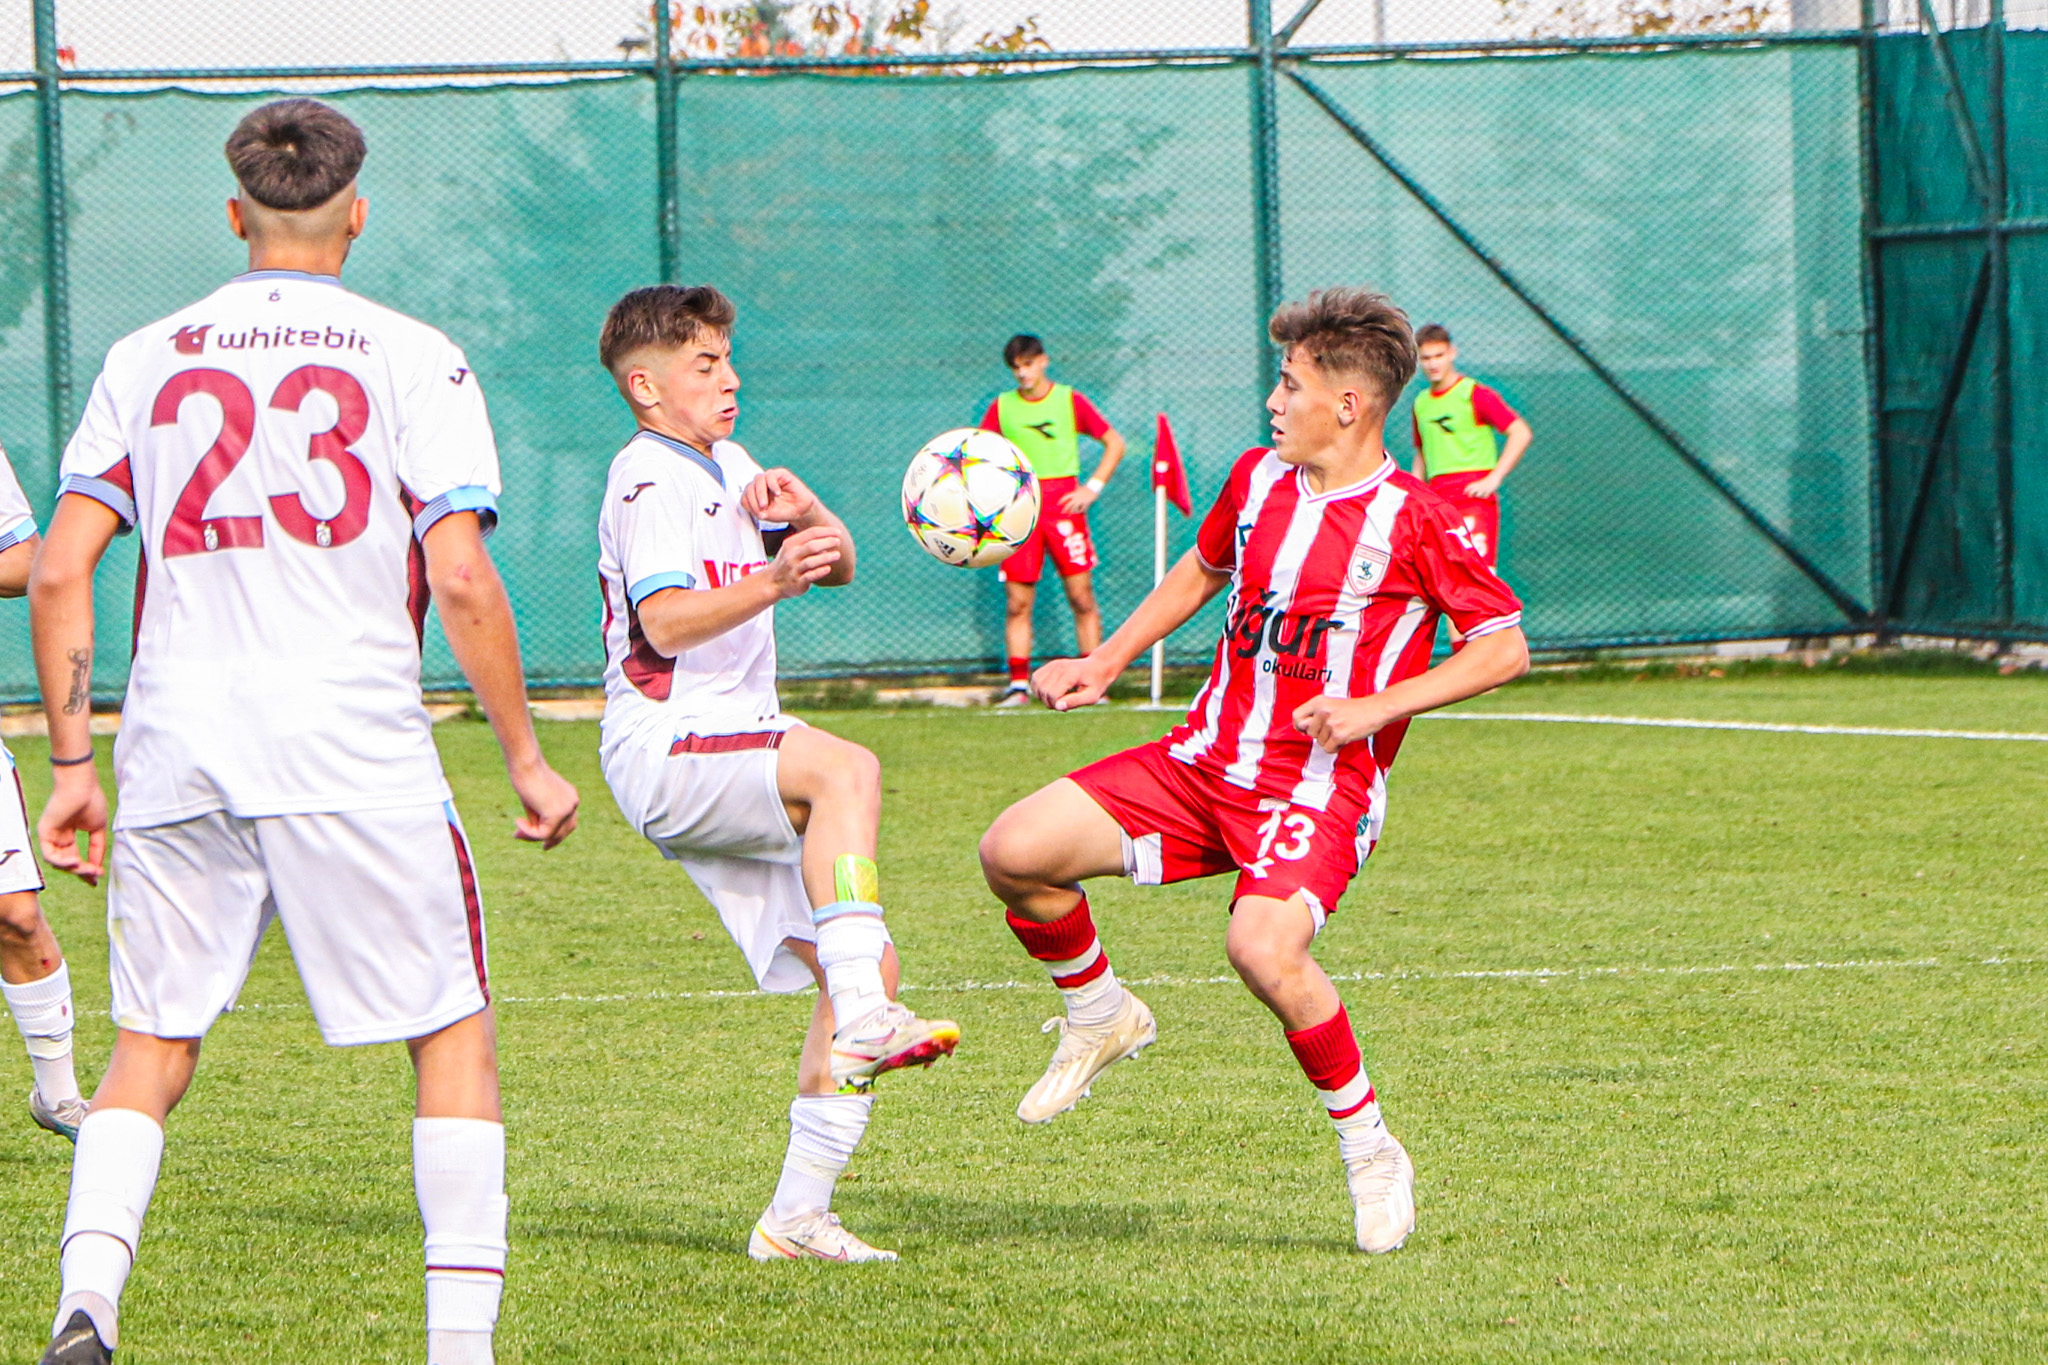 Yılport Samsunspor U16 farklı mağlup oldu